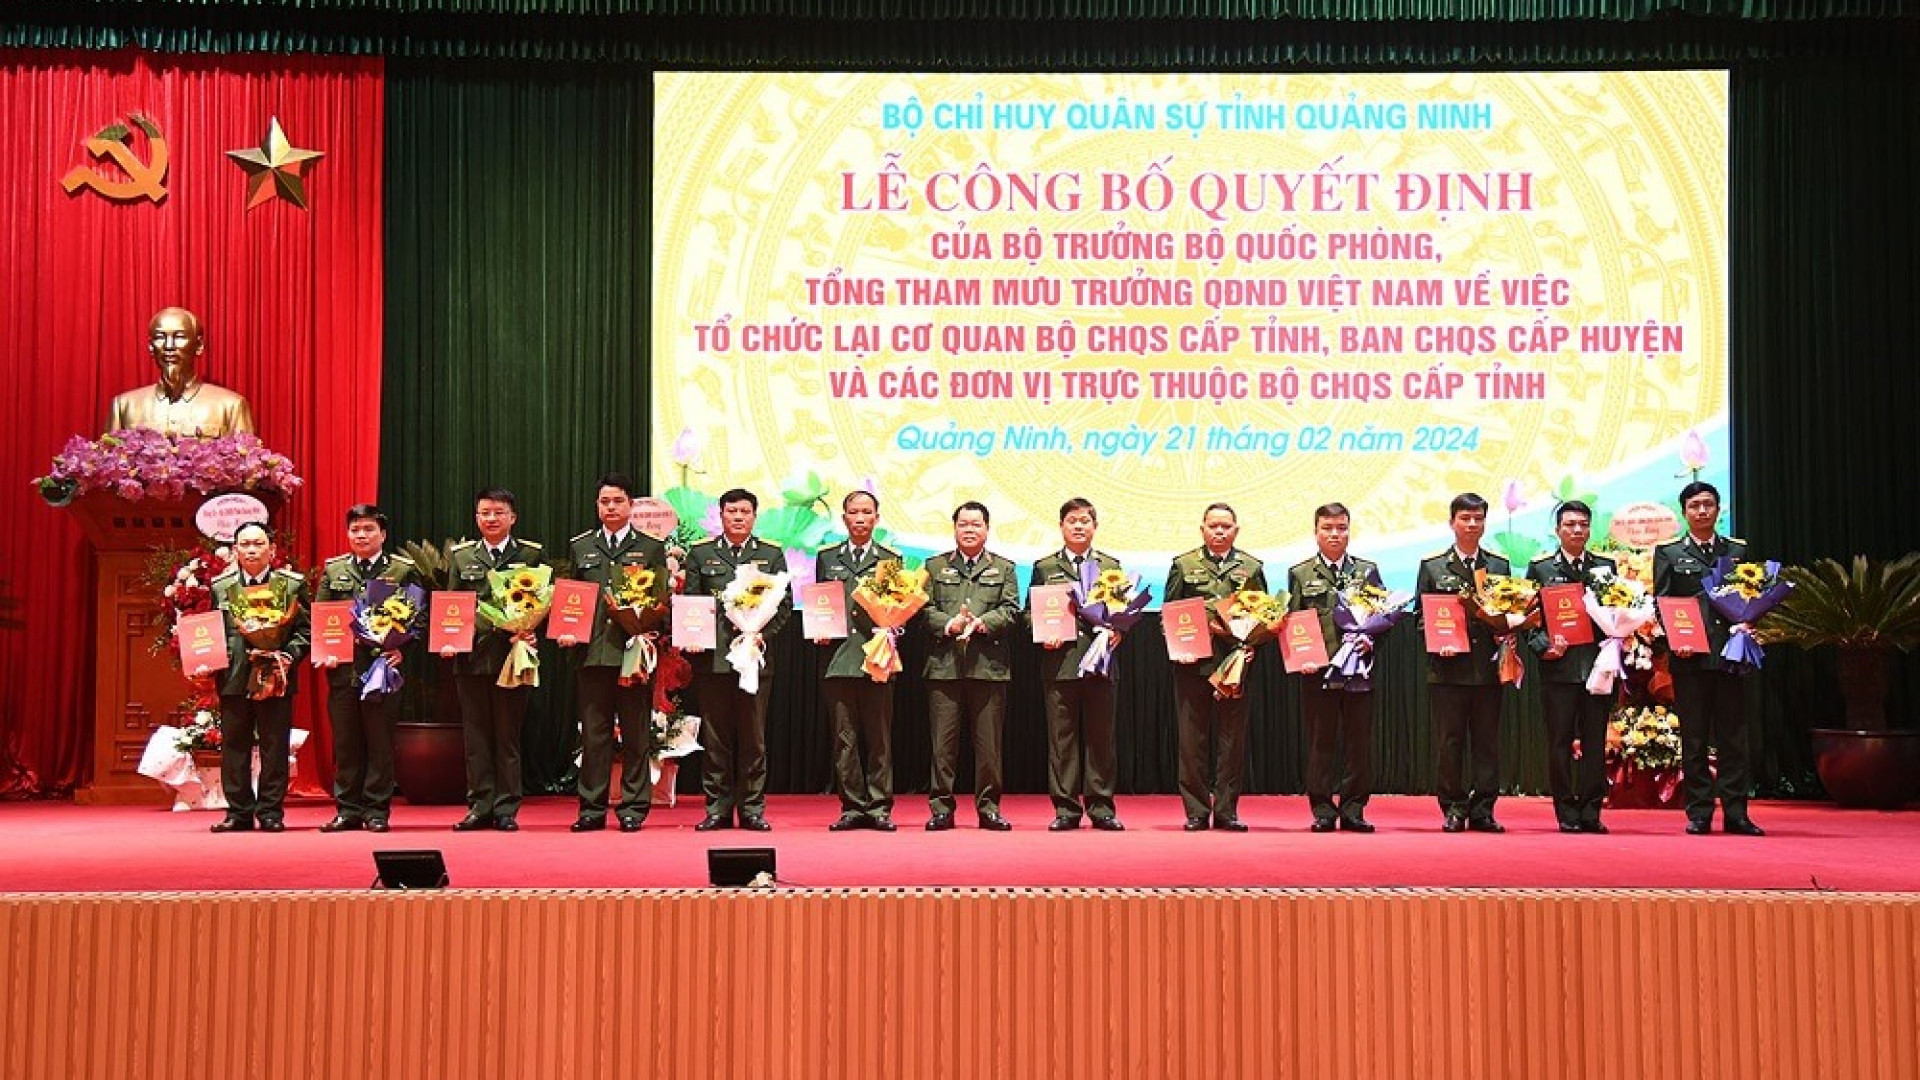 Bộ CHQS tỉnh Quảng Ninh: Công bố các Quyết định về tổ chức lại cơ quan Bộ CHQS tỉnh, Ban CHQS cấp huyện và các đơn vị trực thuộc Bộ CHQS tỉnh